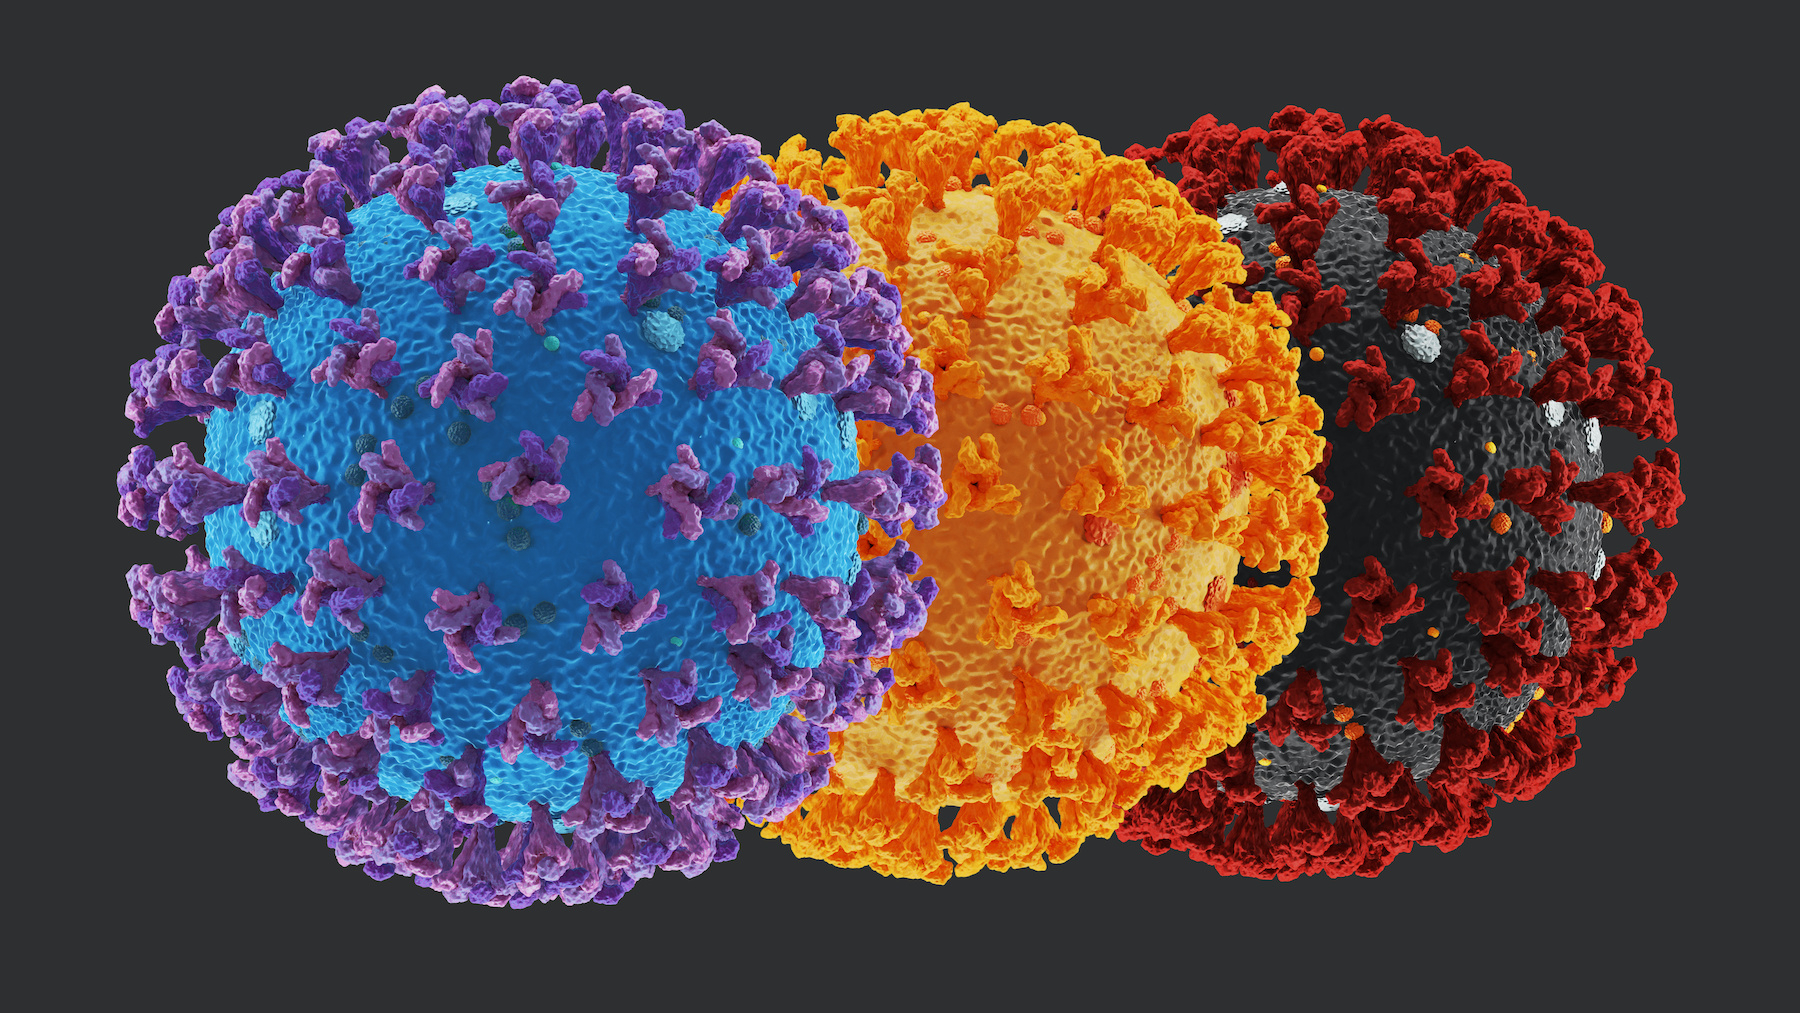 Les mutations de la protéine S confèrent des avantages certains au coronavirus. © Josh, Adobe Stock